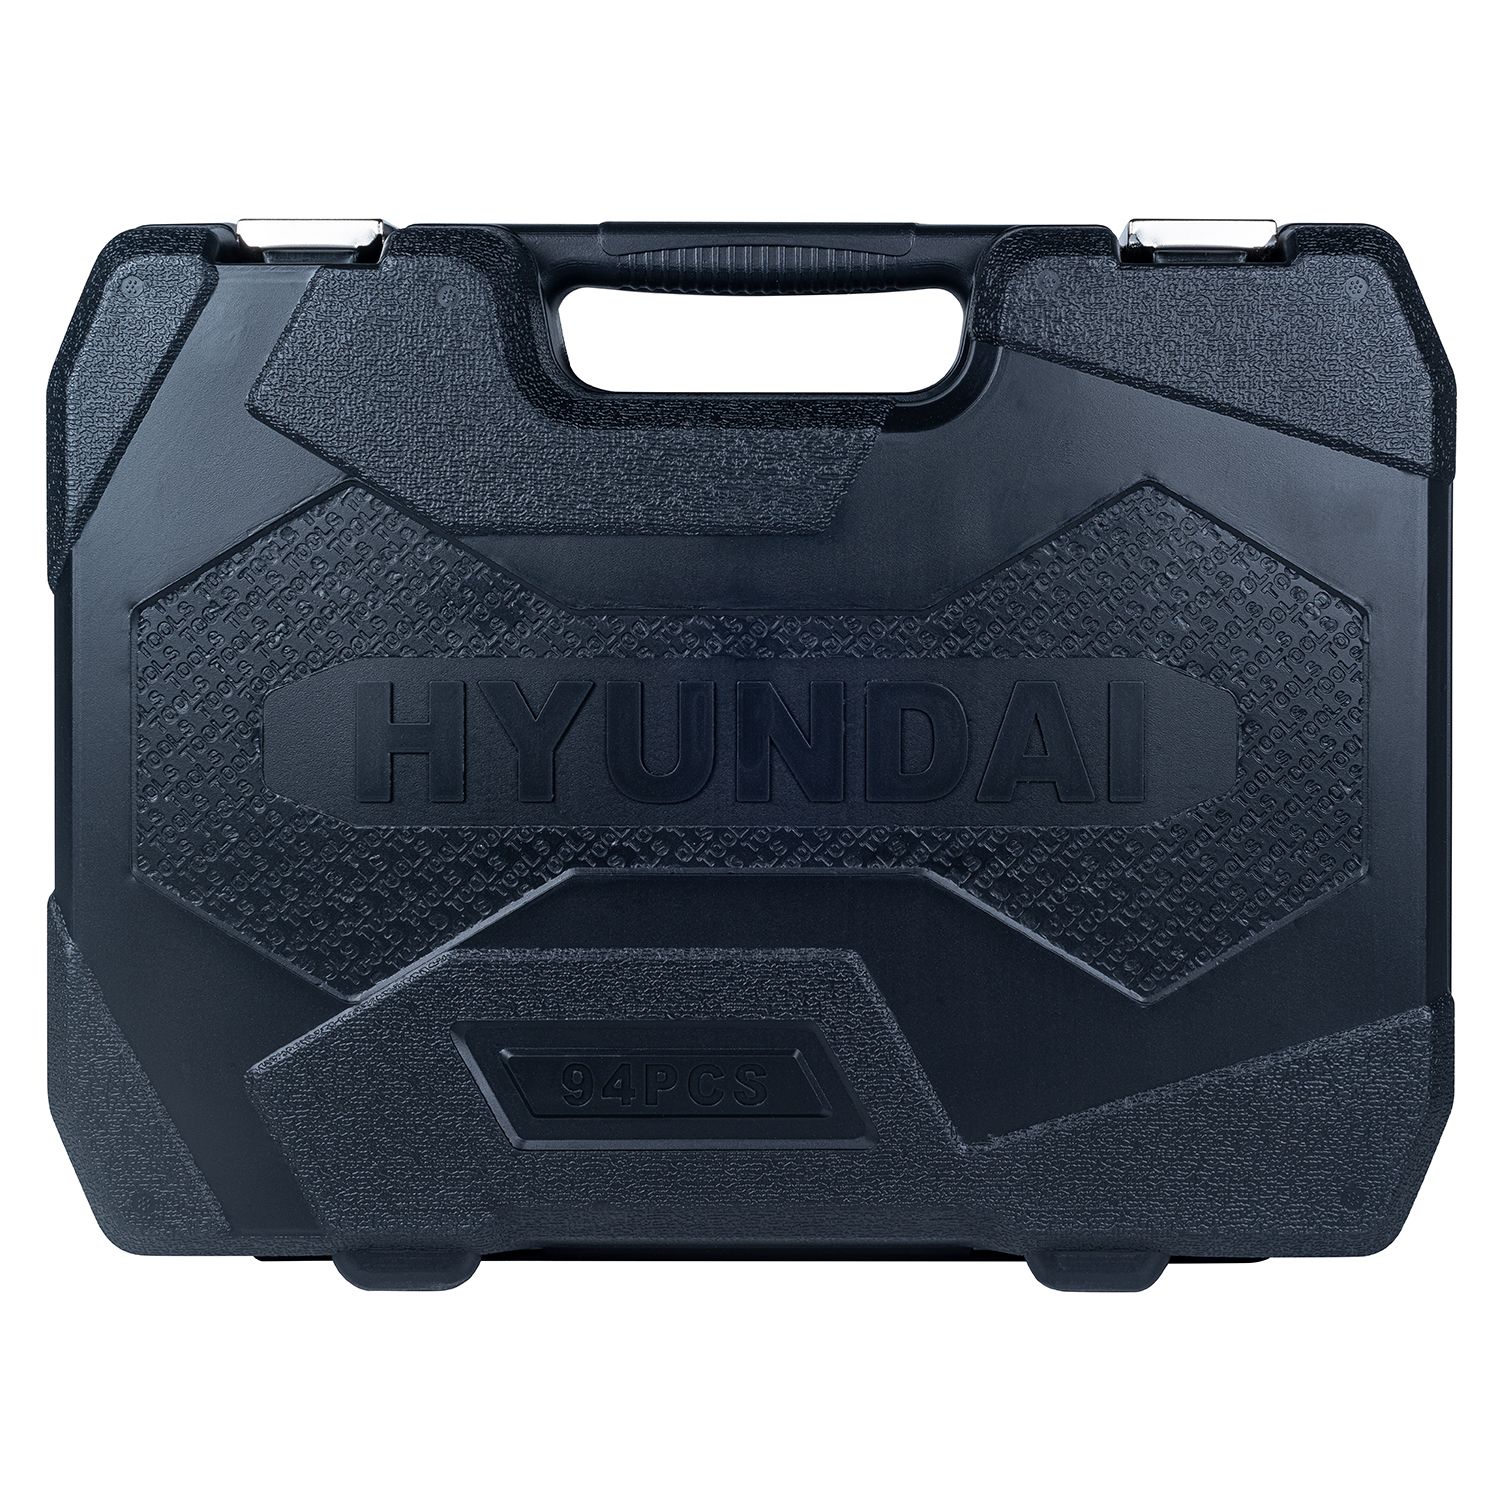 Hyundai gereedschapsset 93-delig